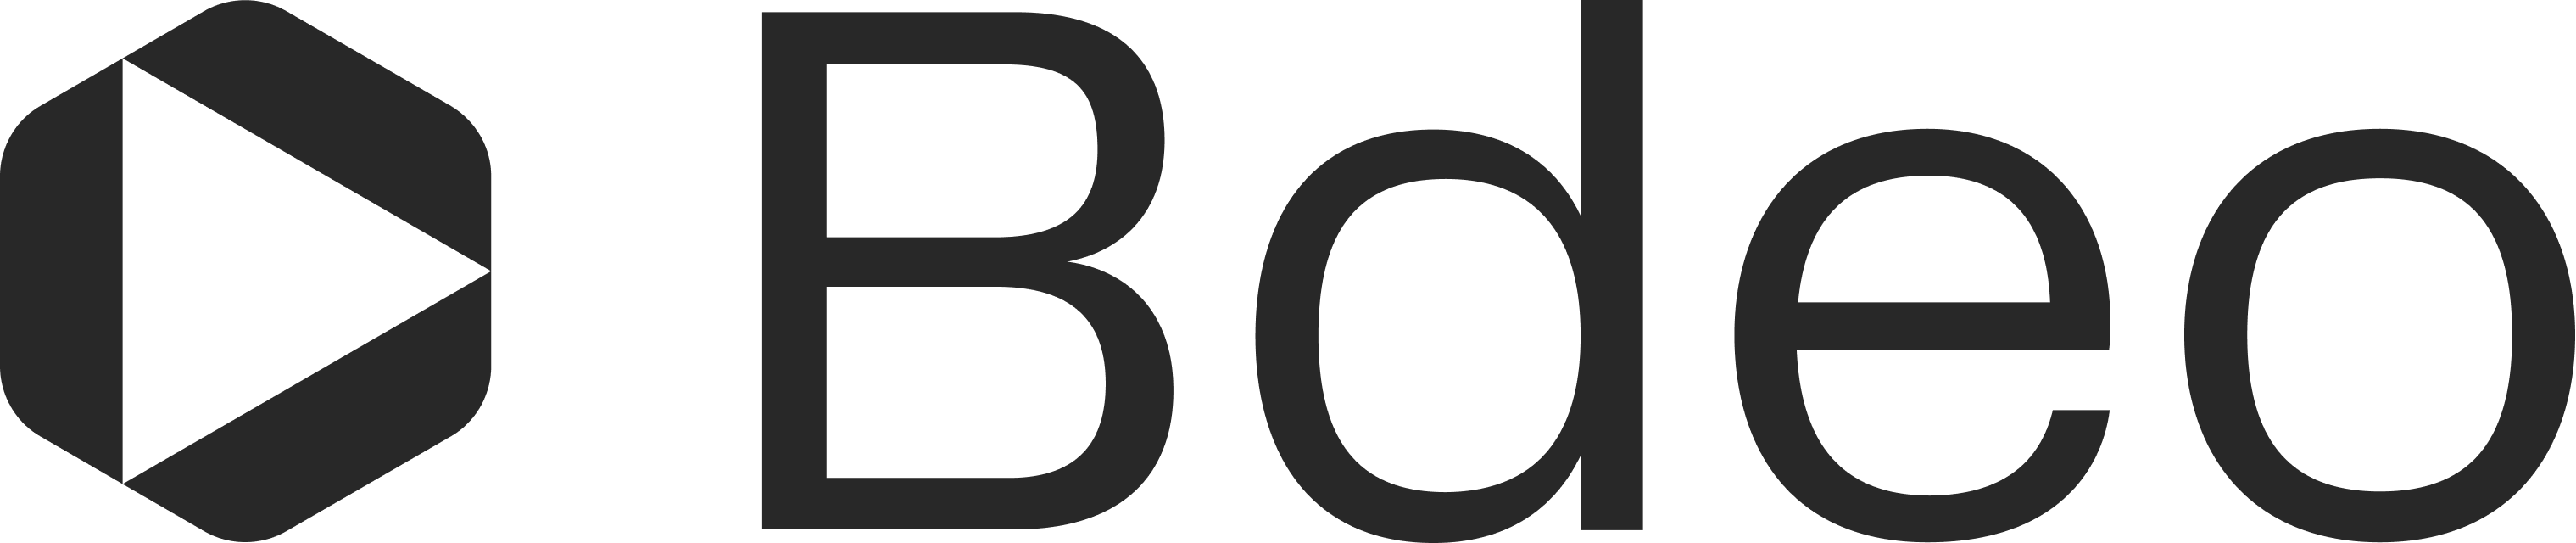 Bdeo's logo